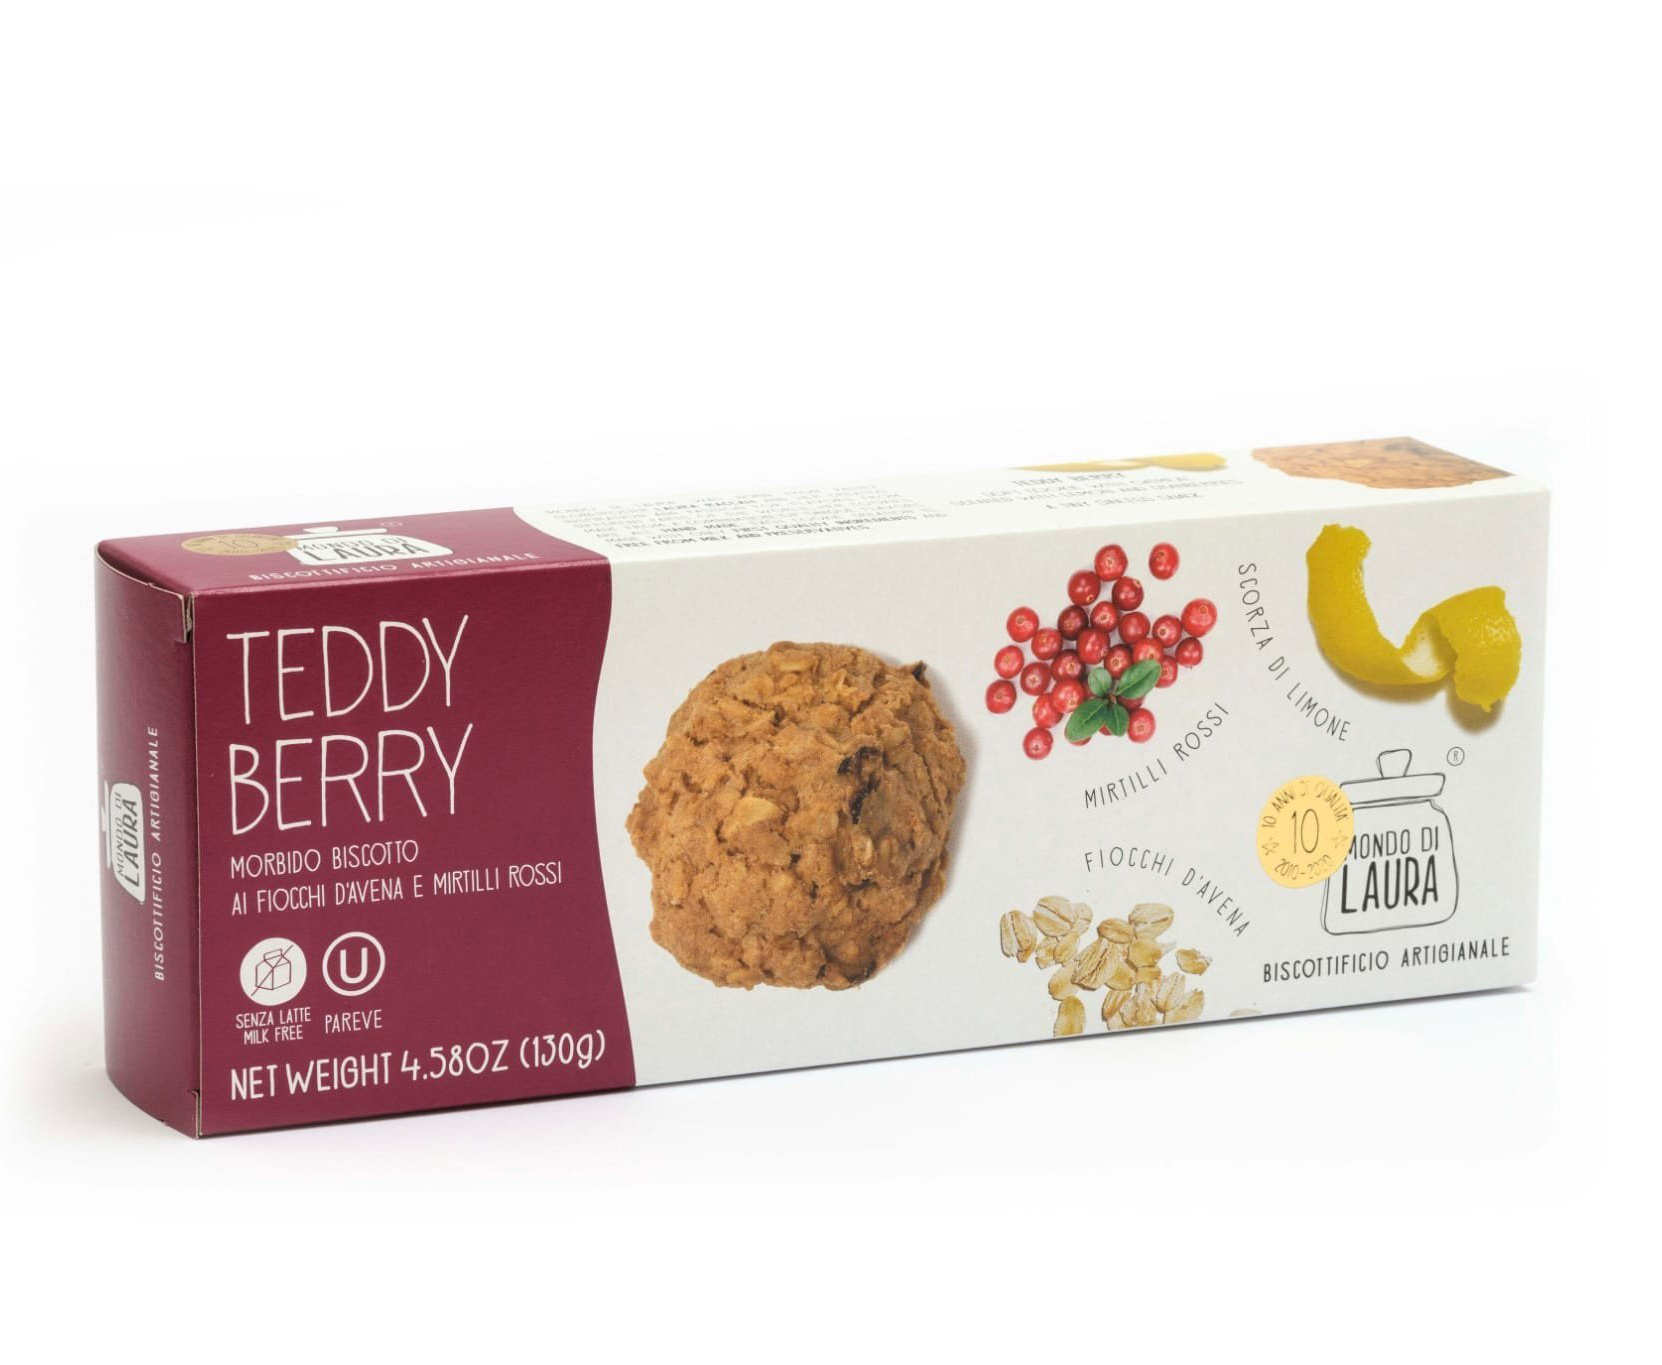 Biscuiti artizanali - Teddy Berry | Mondo di Laura